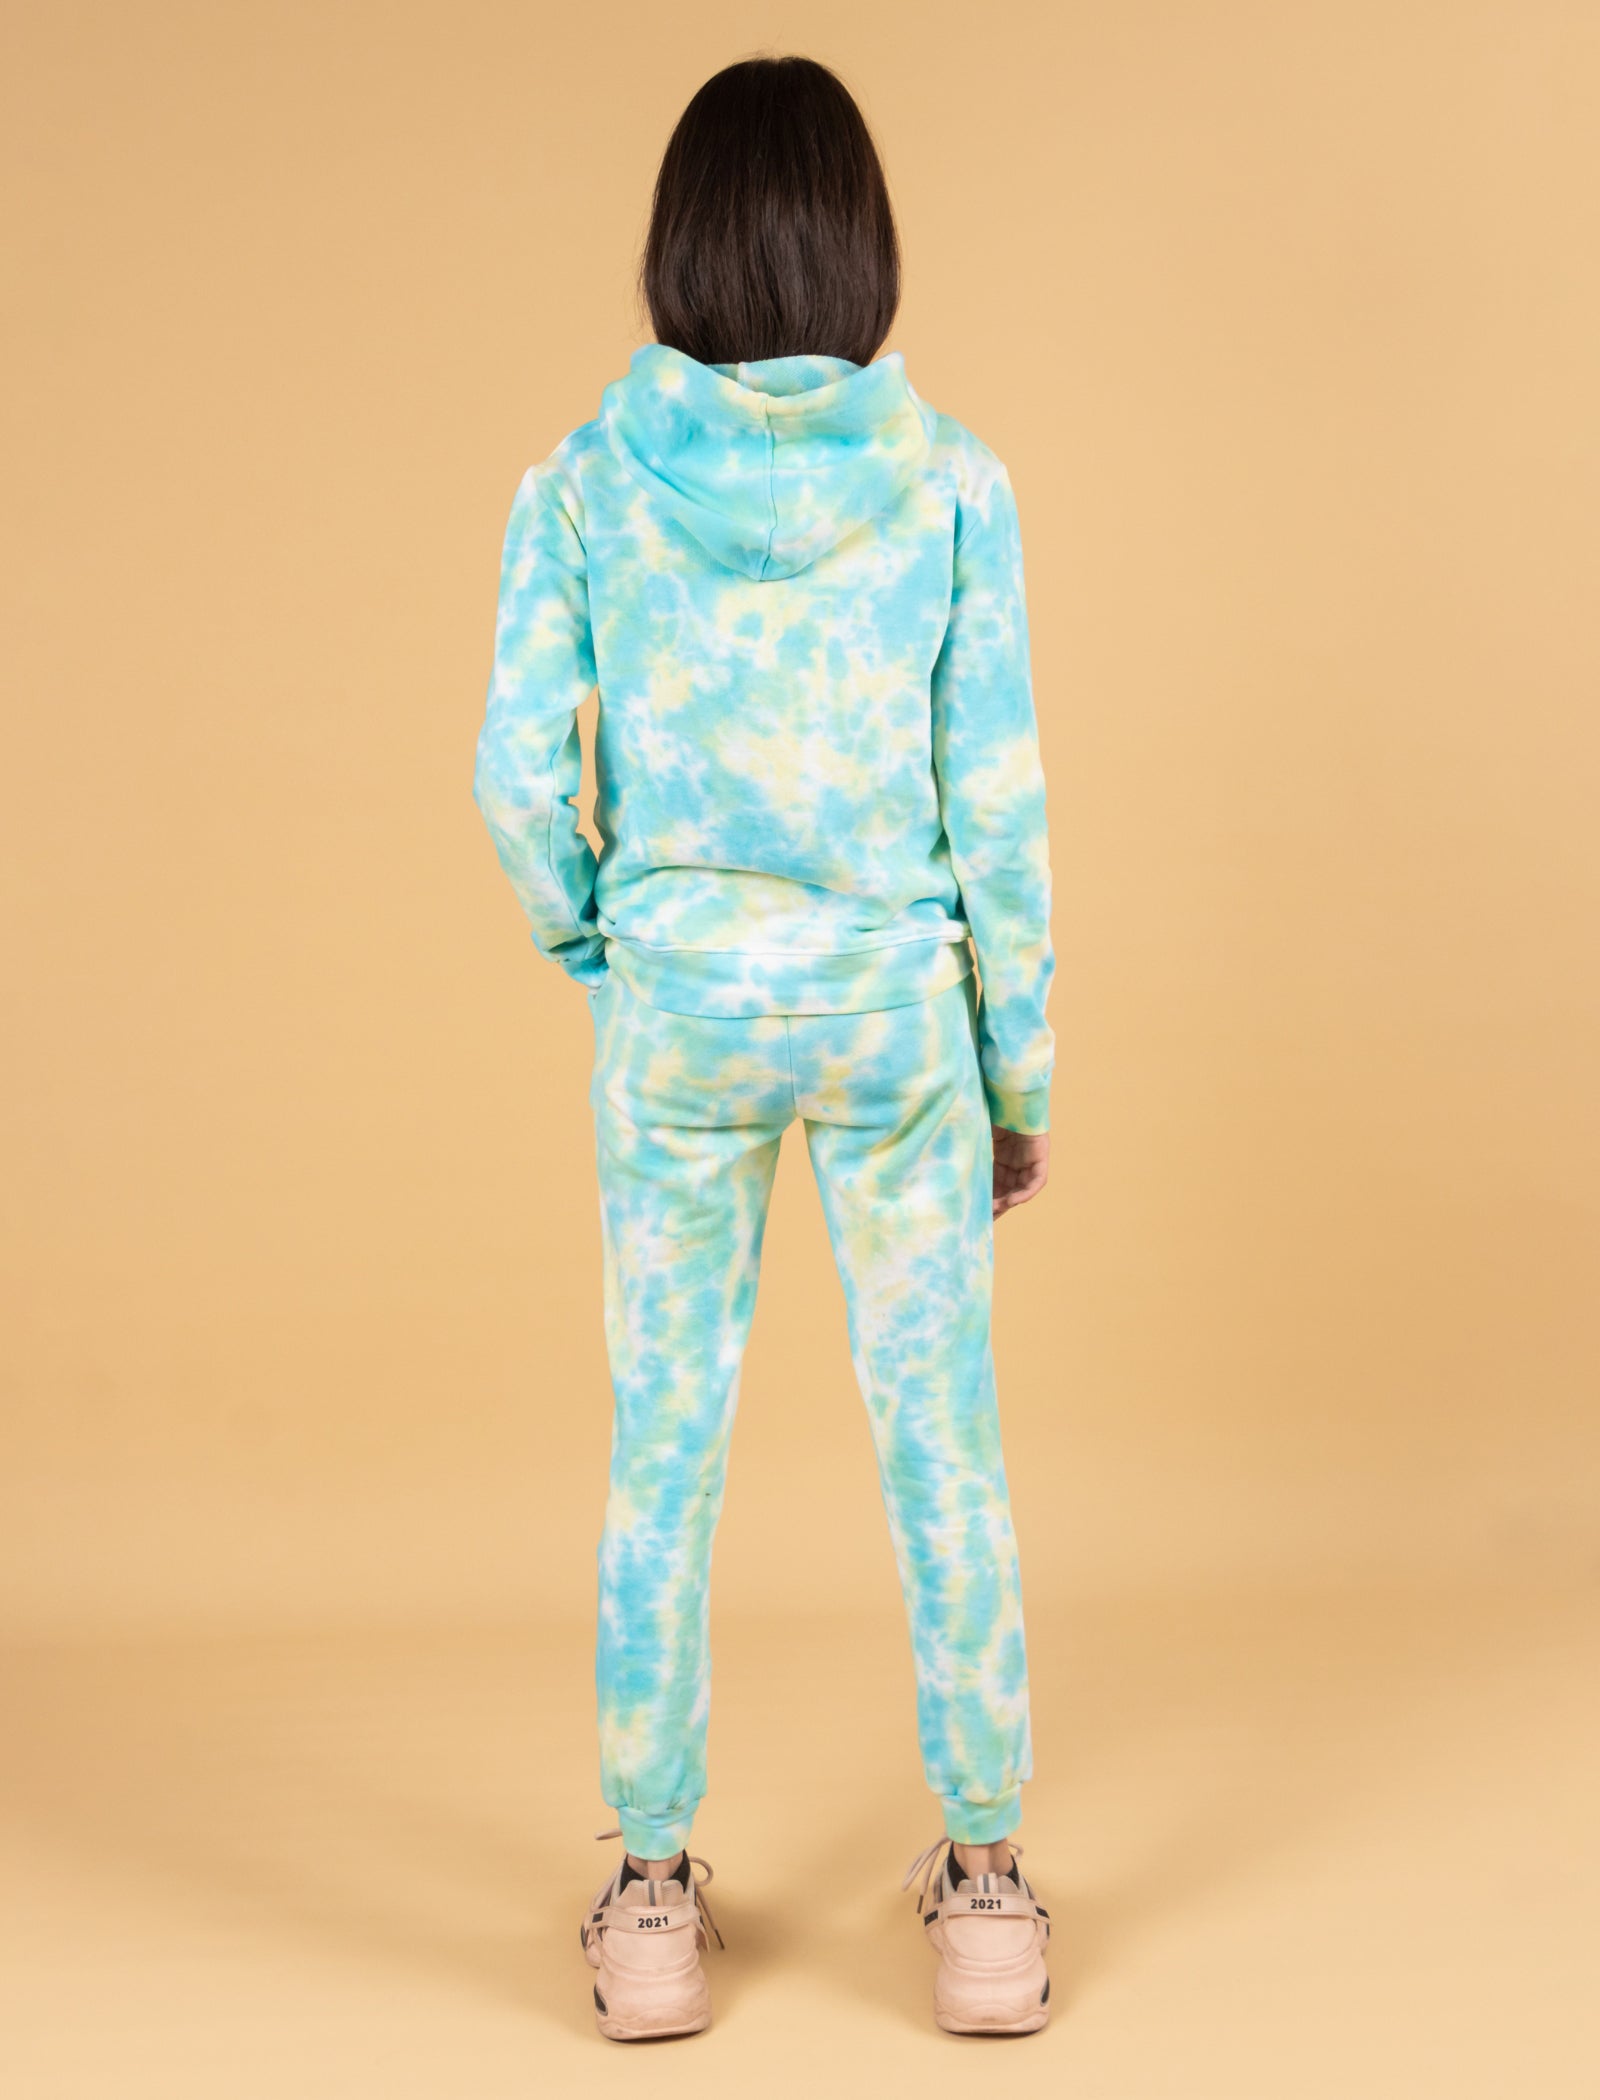 Tweeny Mini Tie-Dye Hoodie Set for Kids Girls Winter Wear (Lemon-Green  Colour)